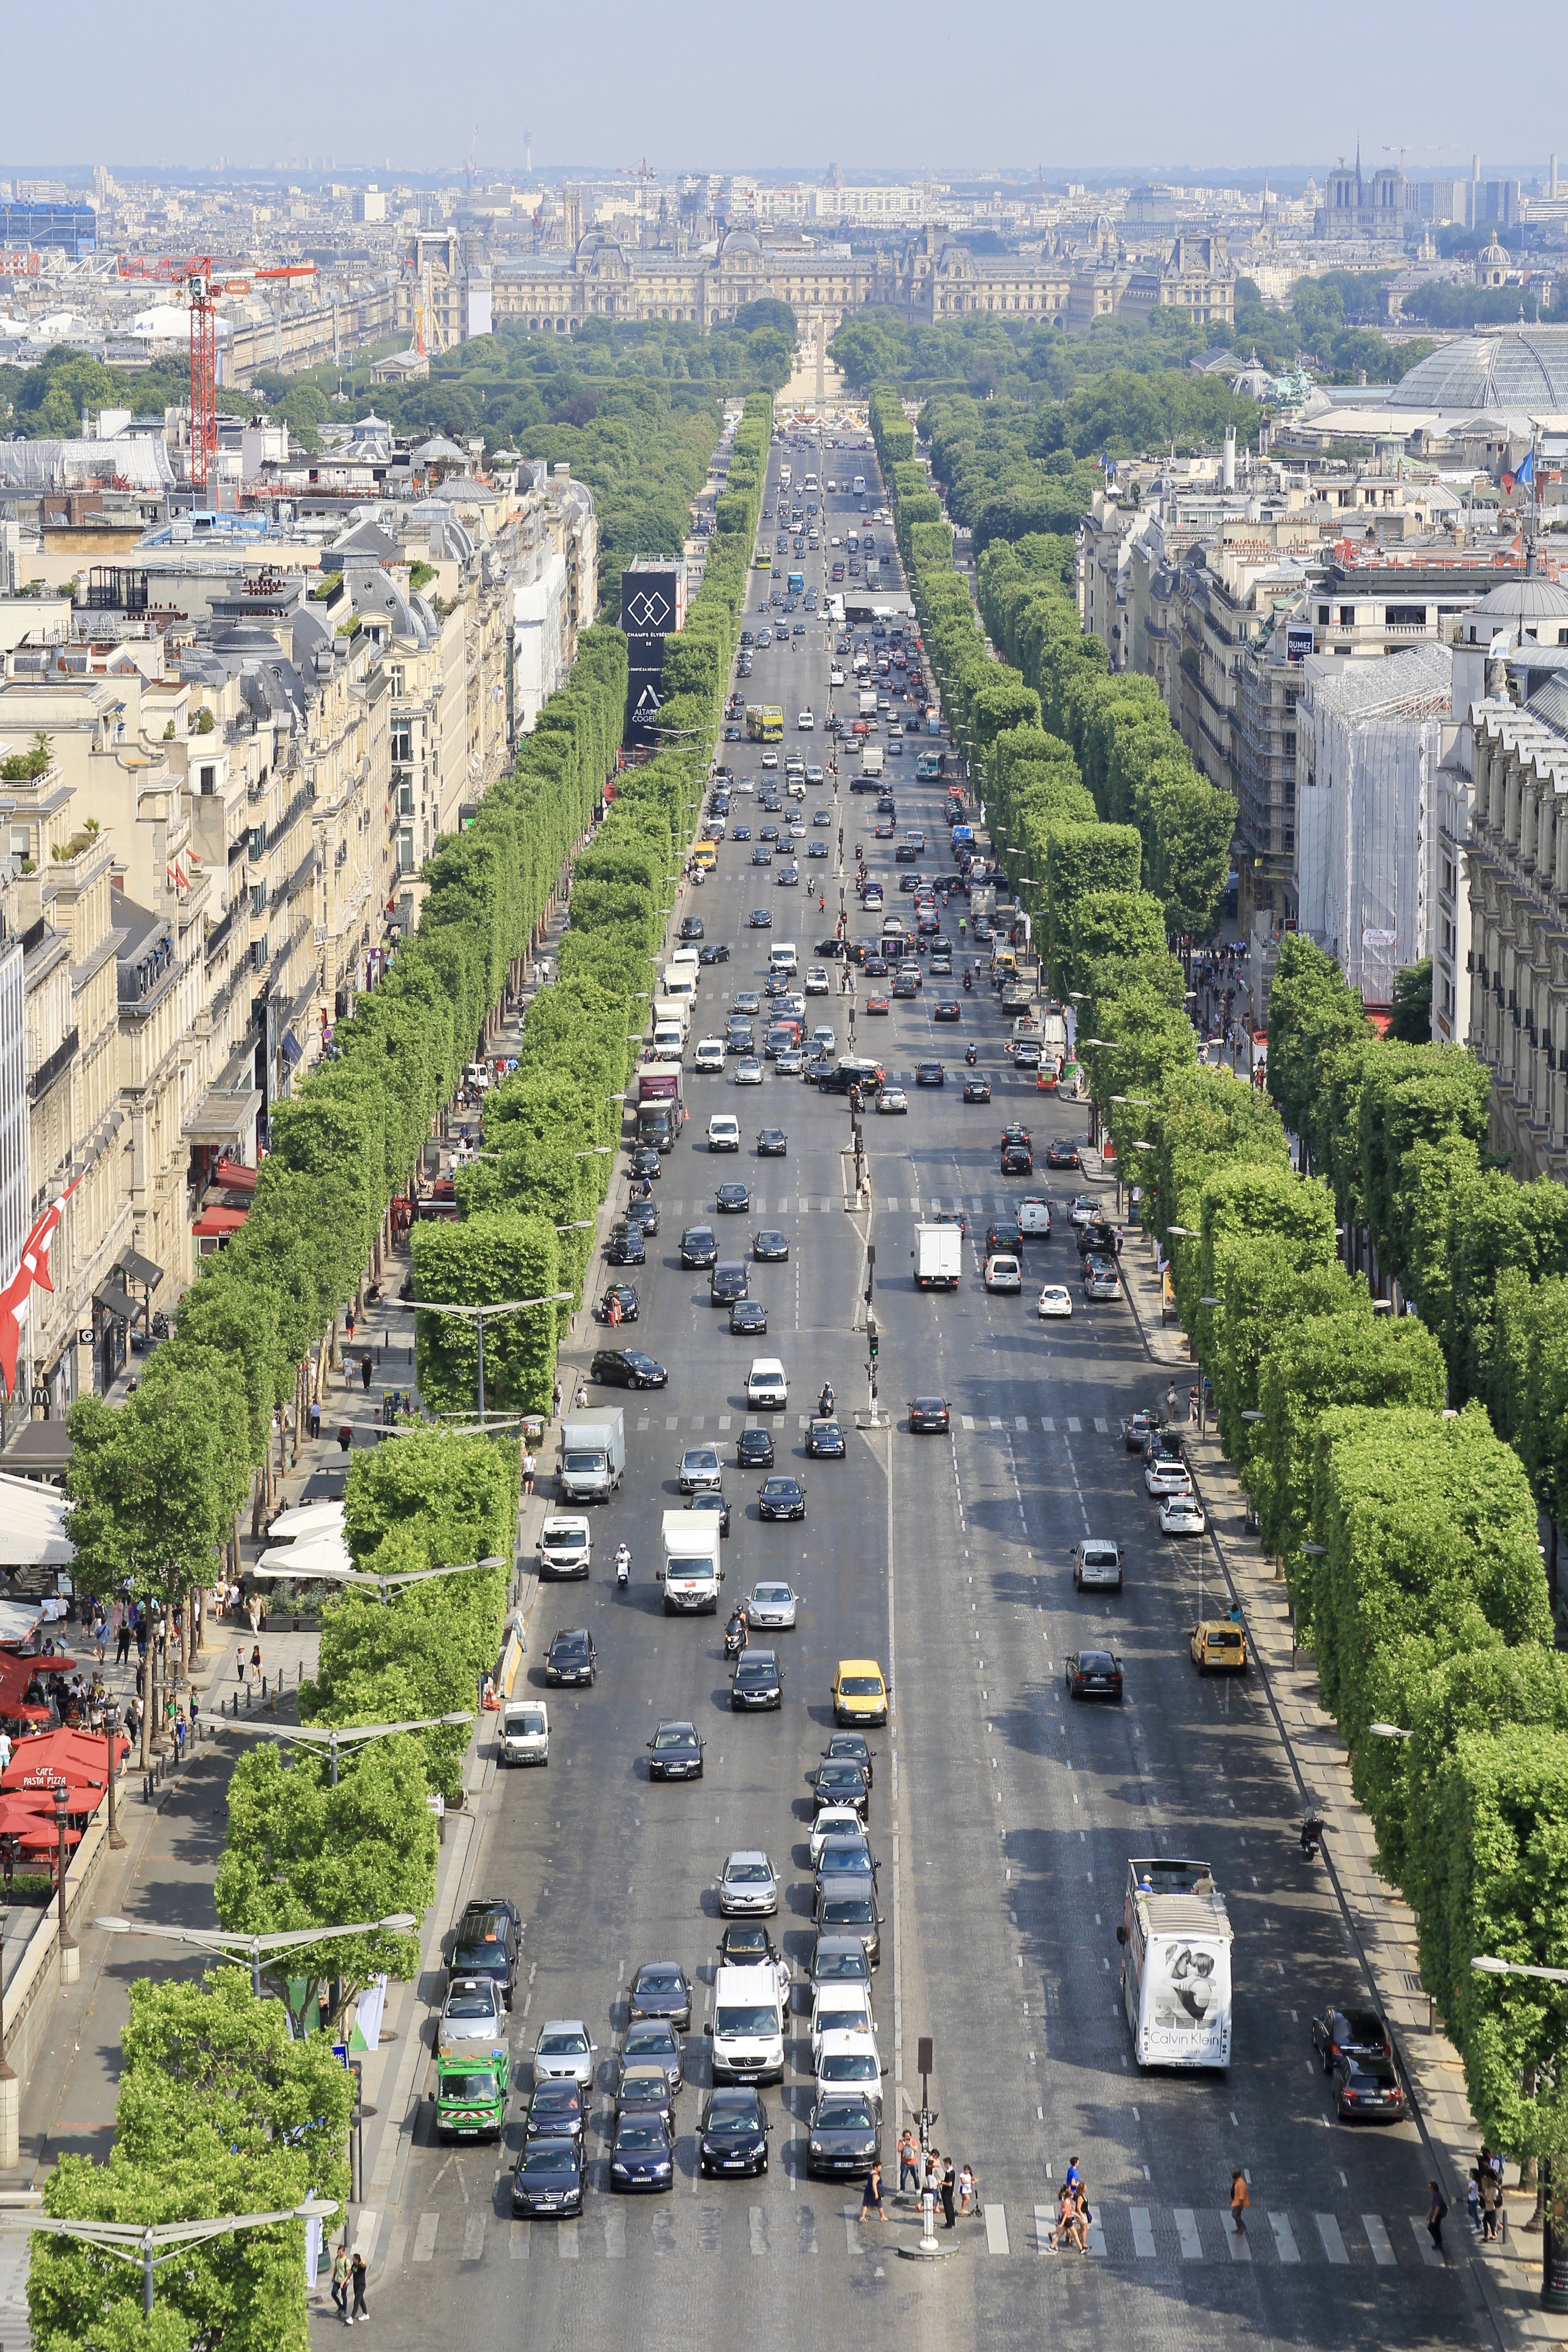 Avenue des Champs Elysees in Paris, France, view towards the Arc